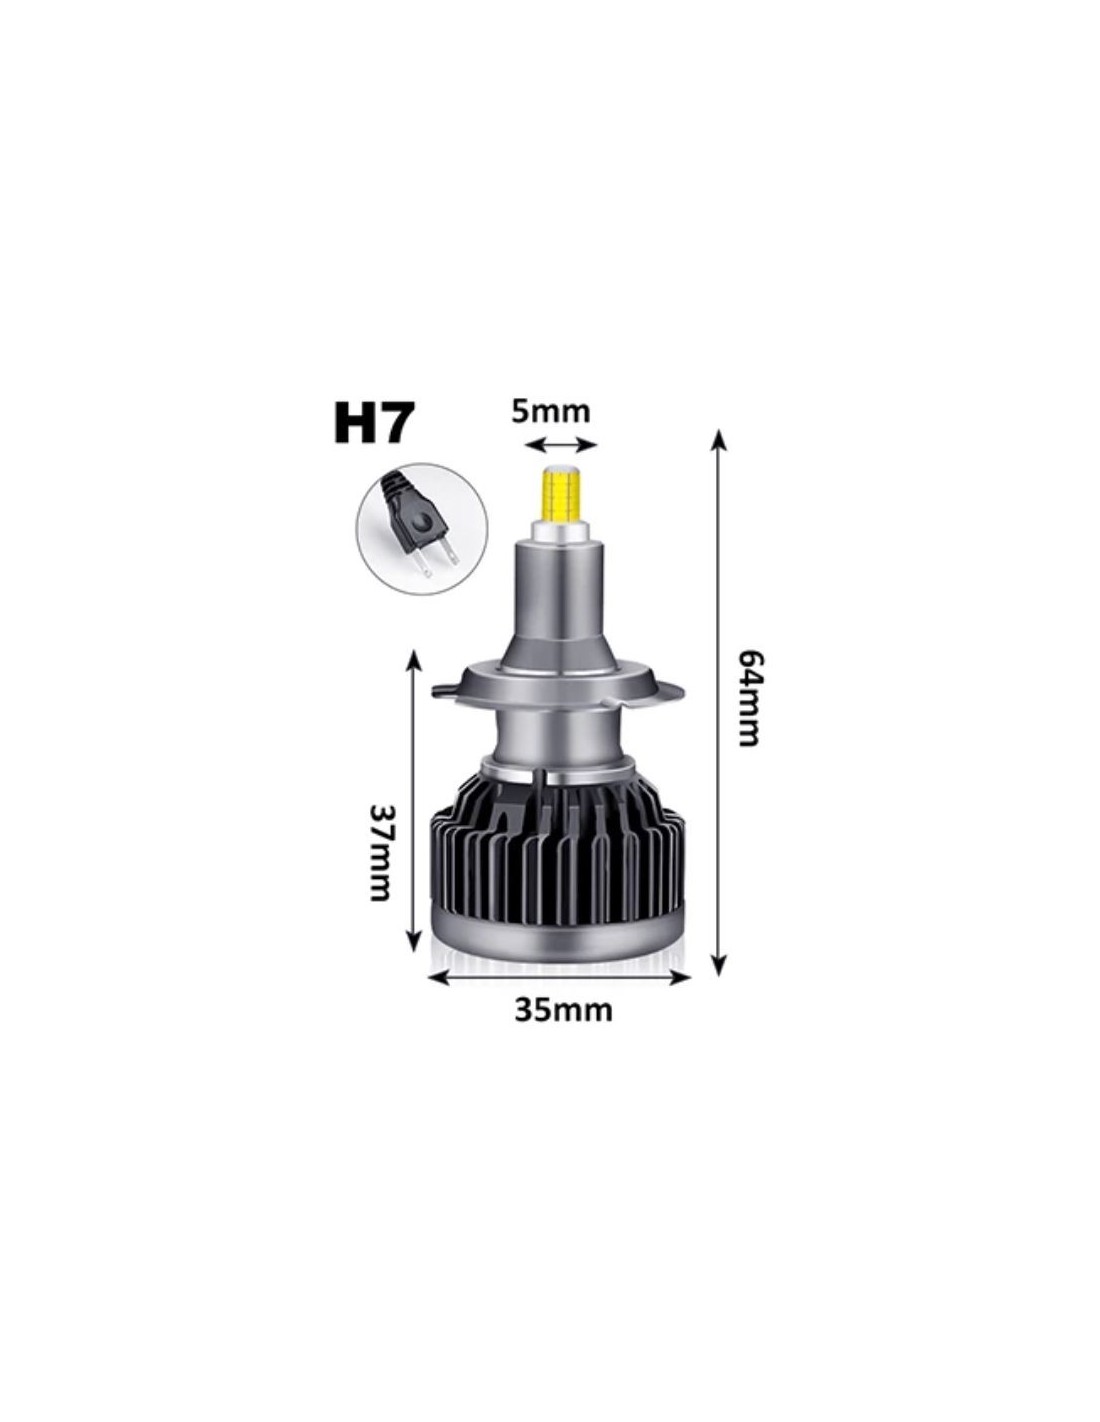 Lampade Led H7 360 TORNADO 3D Uniforme Senza Ombre Specifico Lenticolare